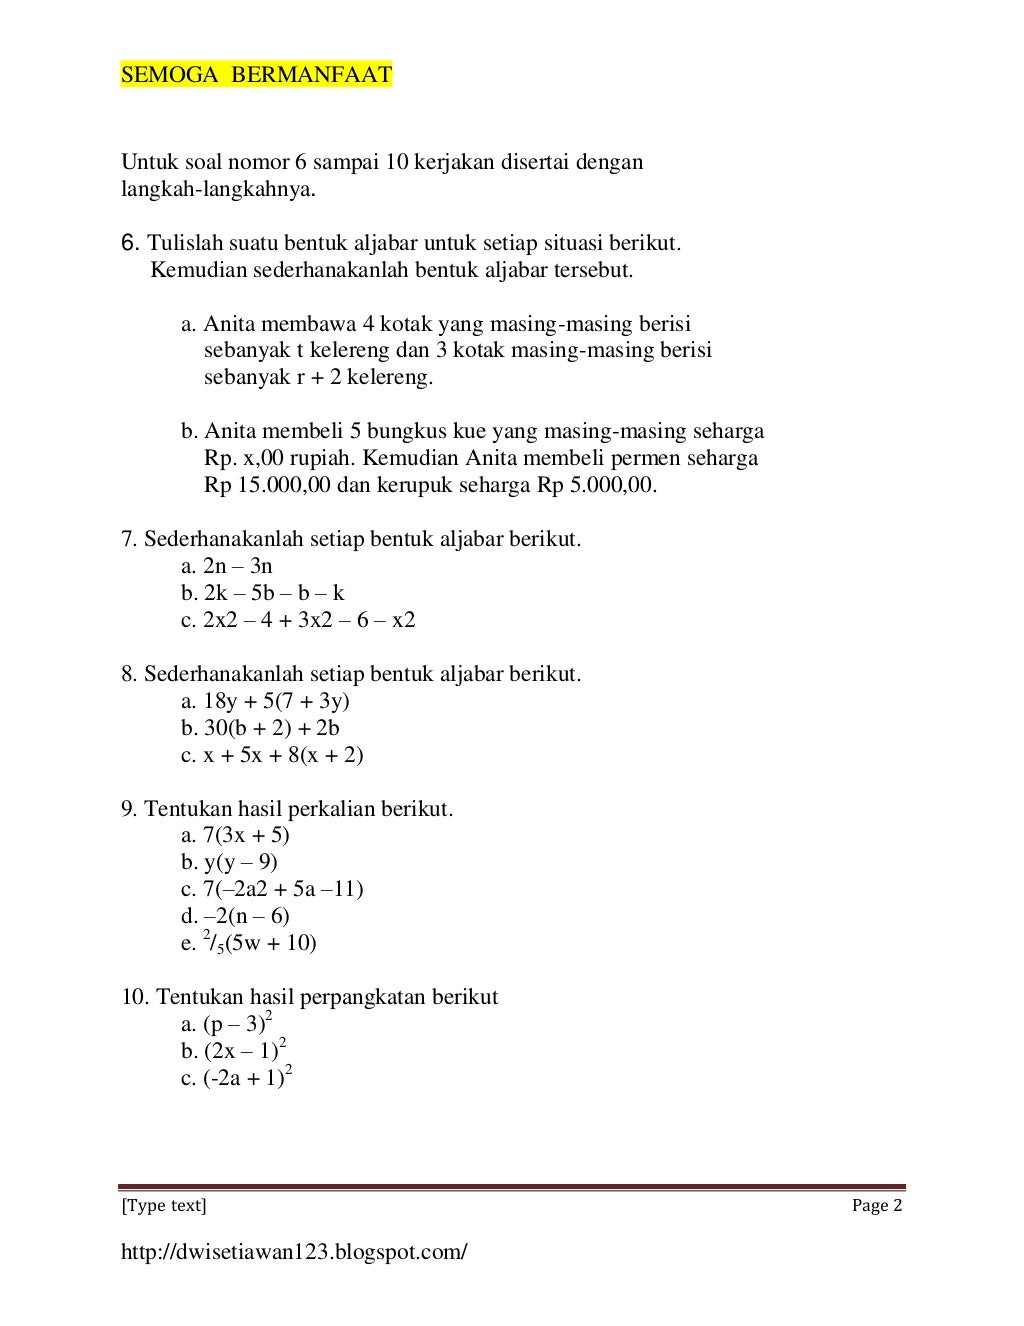 Contoh Soal Literasi Matematika Smp Kelas 7